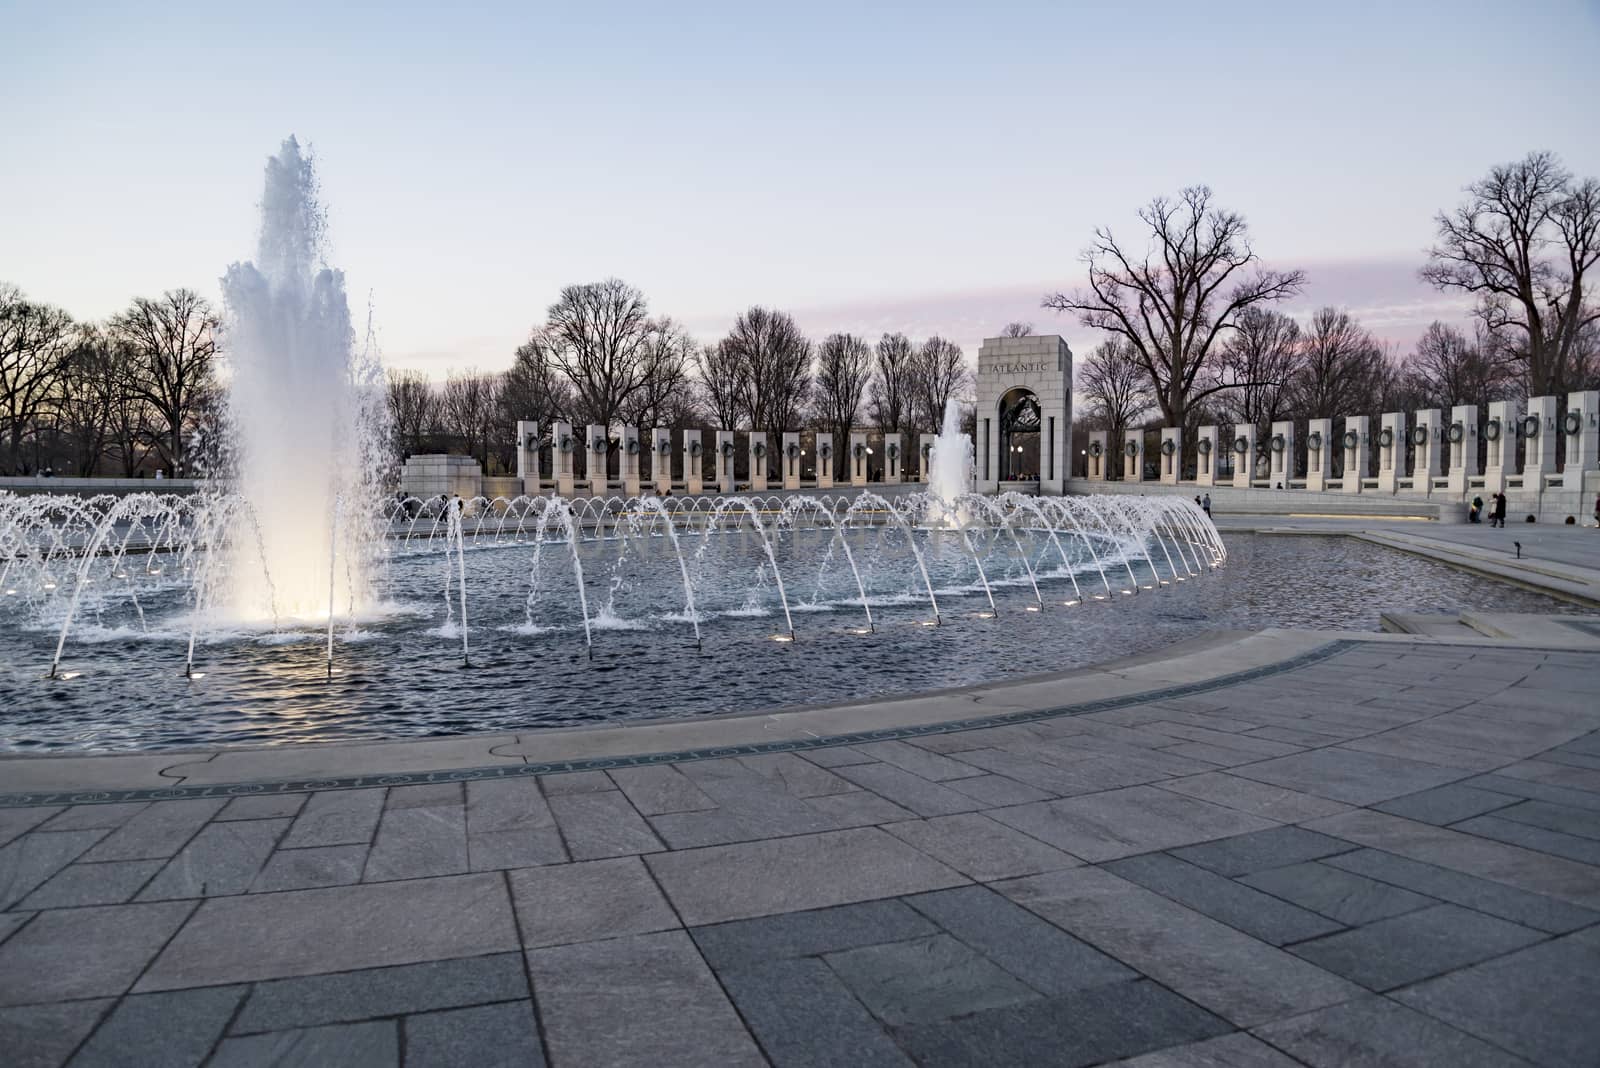 World War 2 Memorial at sunset during winter time in Washington DC